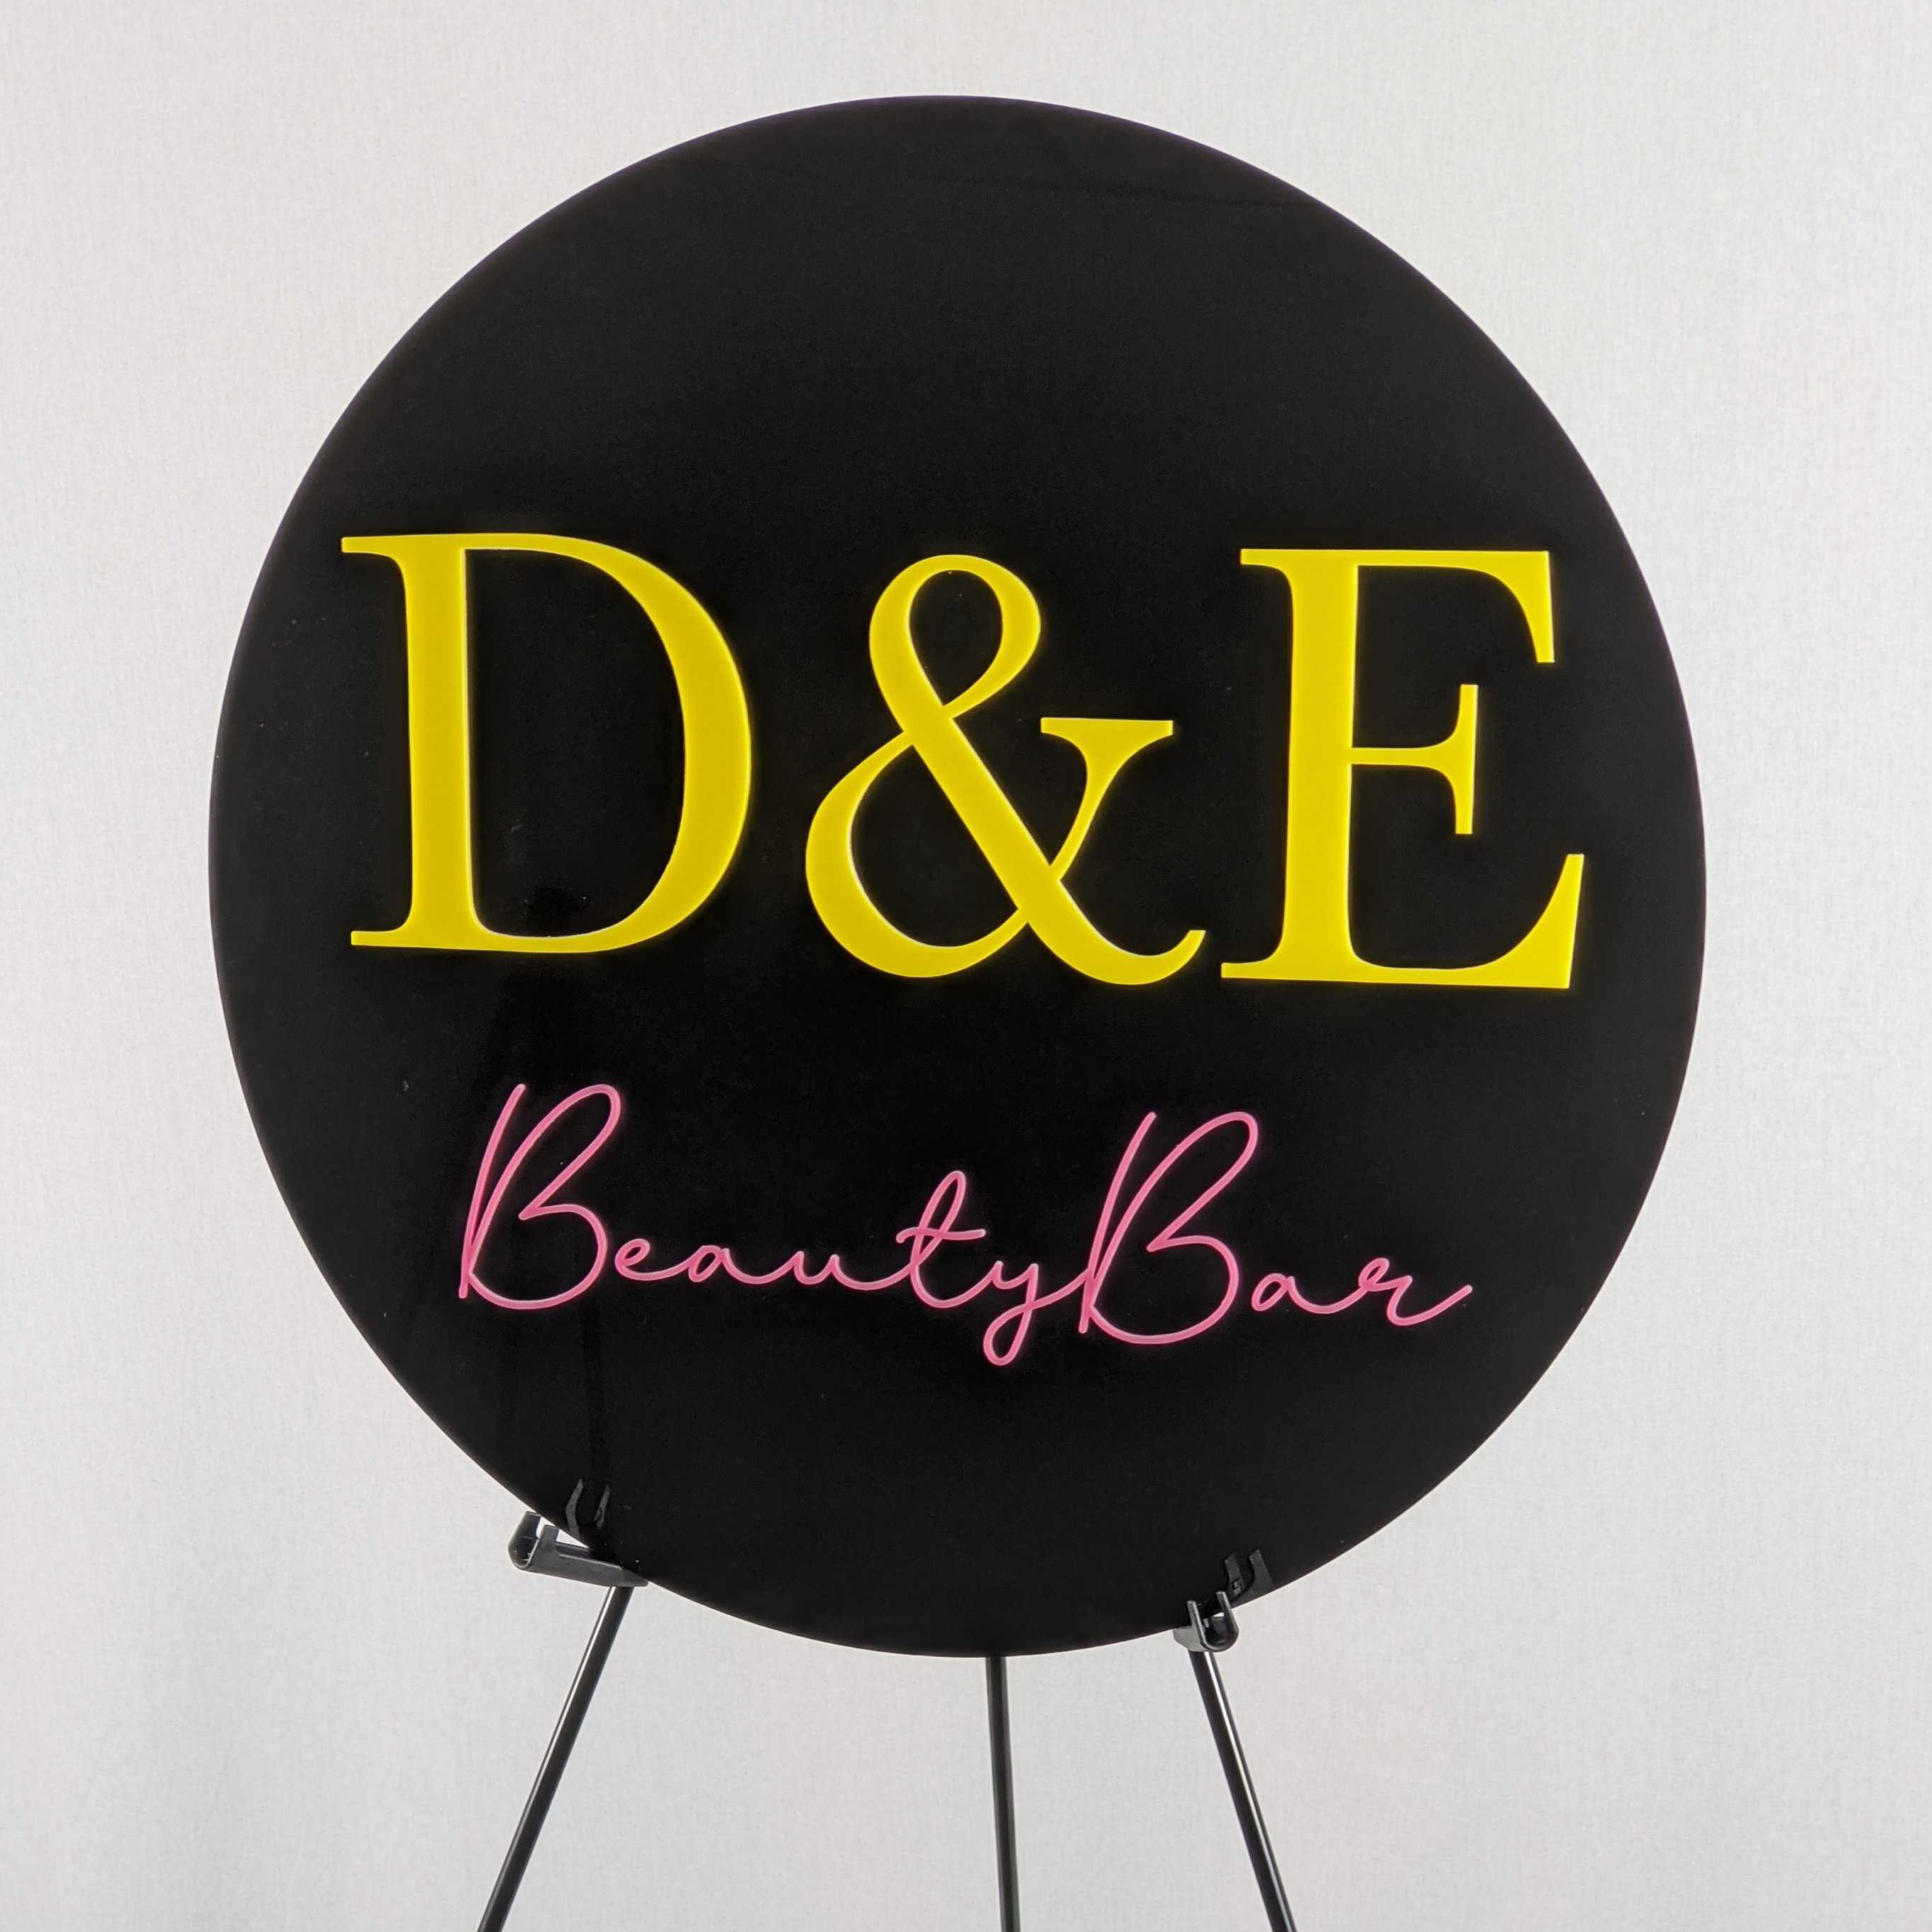 D&E Beauty Bar